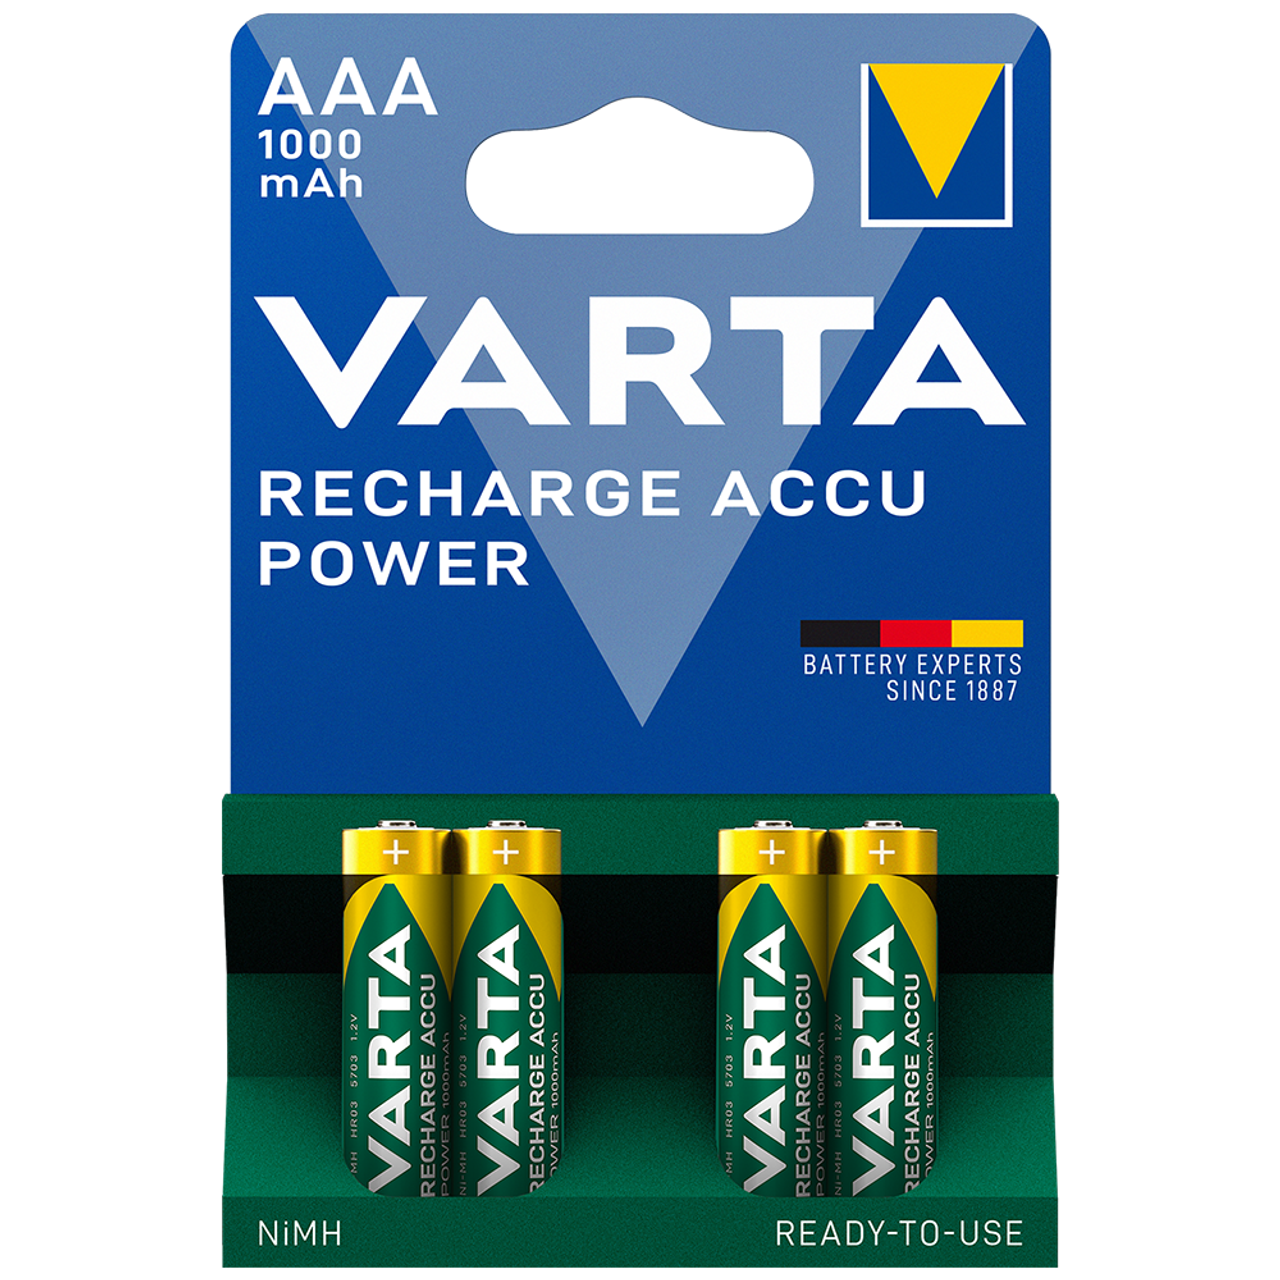 4x Piles Varta Rechargeable Accu AAA 1000 mAh LR03 BP4